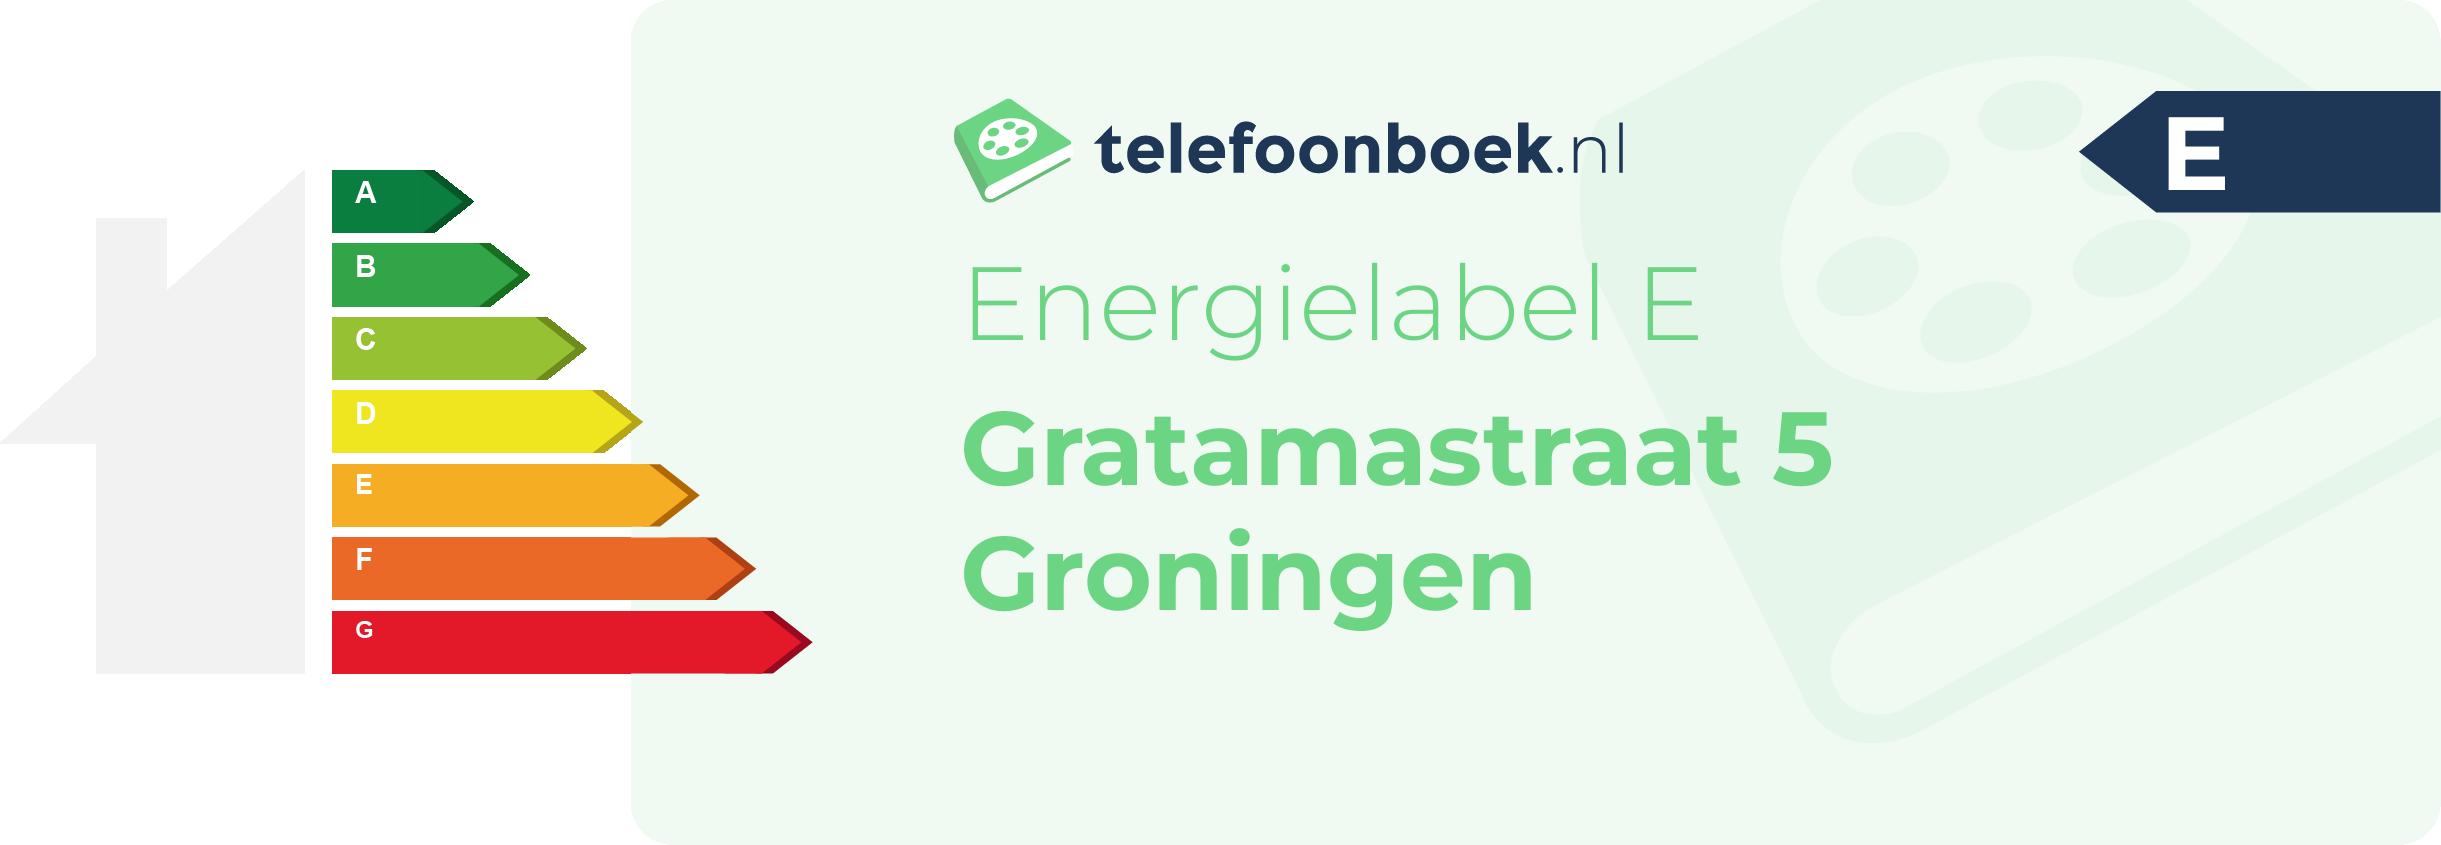 Energielabel Gratamastraat 5 Groningen